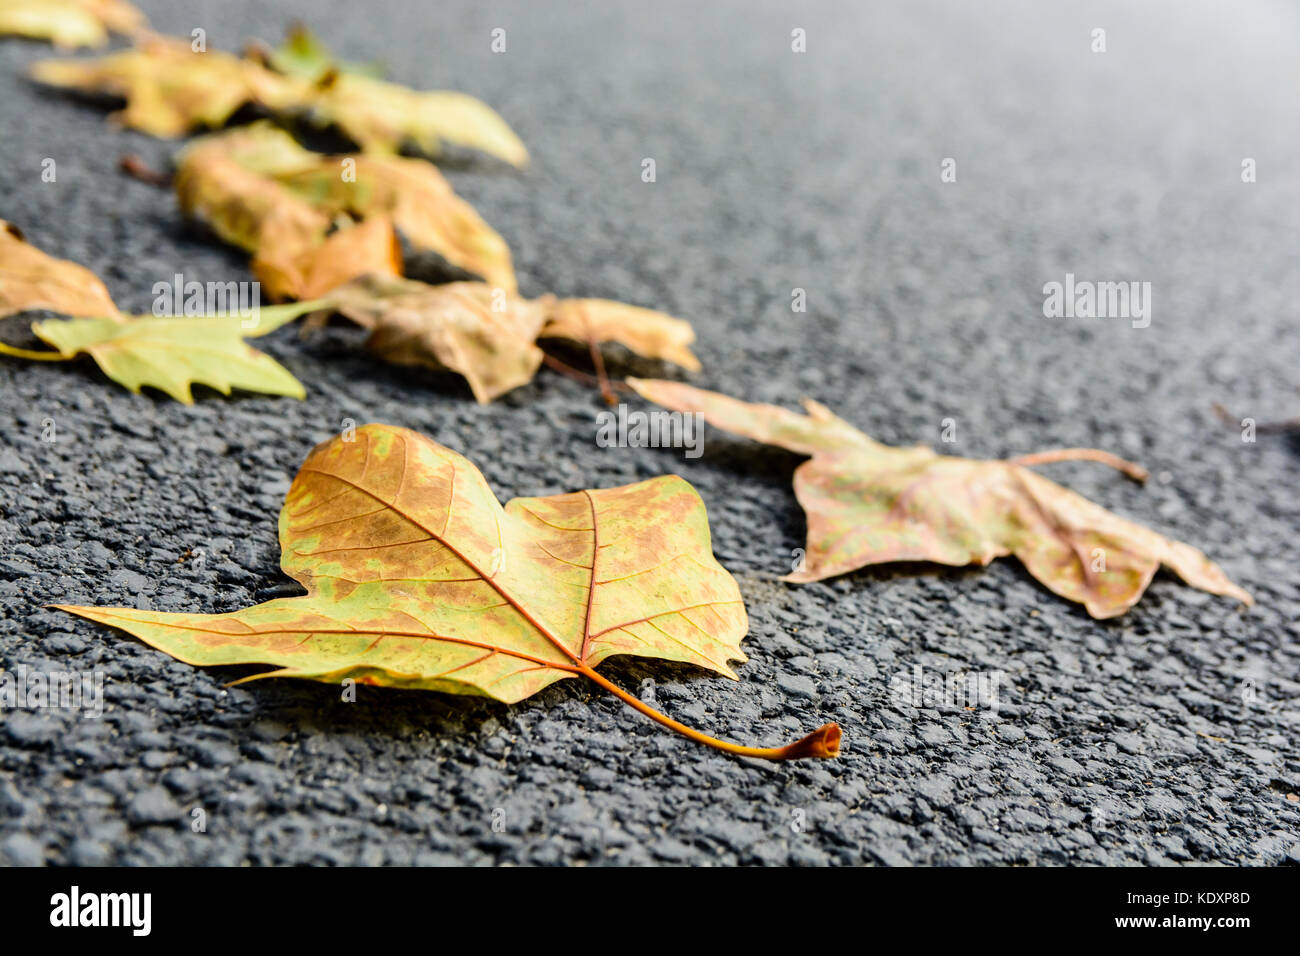 Des feuilles sèches sur la route. Vue rapprochée de feuilles d'érable mort couché sur une route asphaltée avec une faible profondeur de champ. Banque D'Images